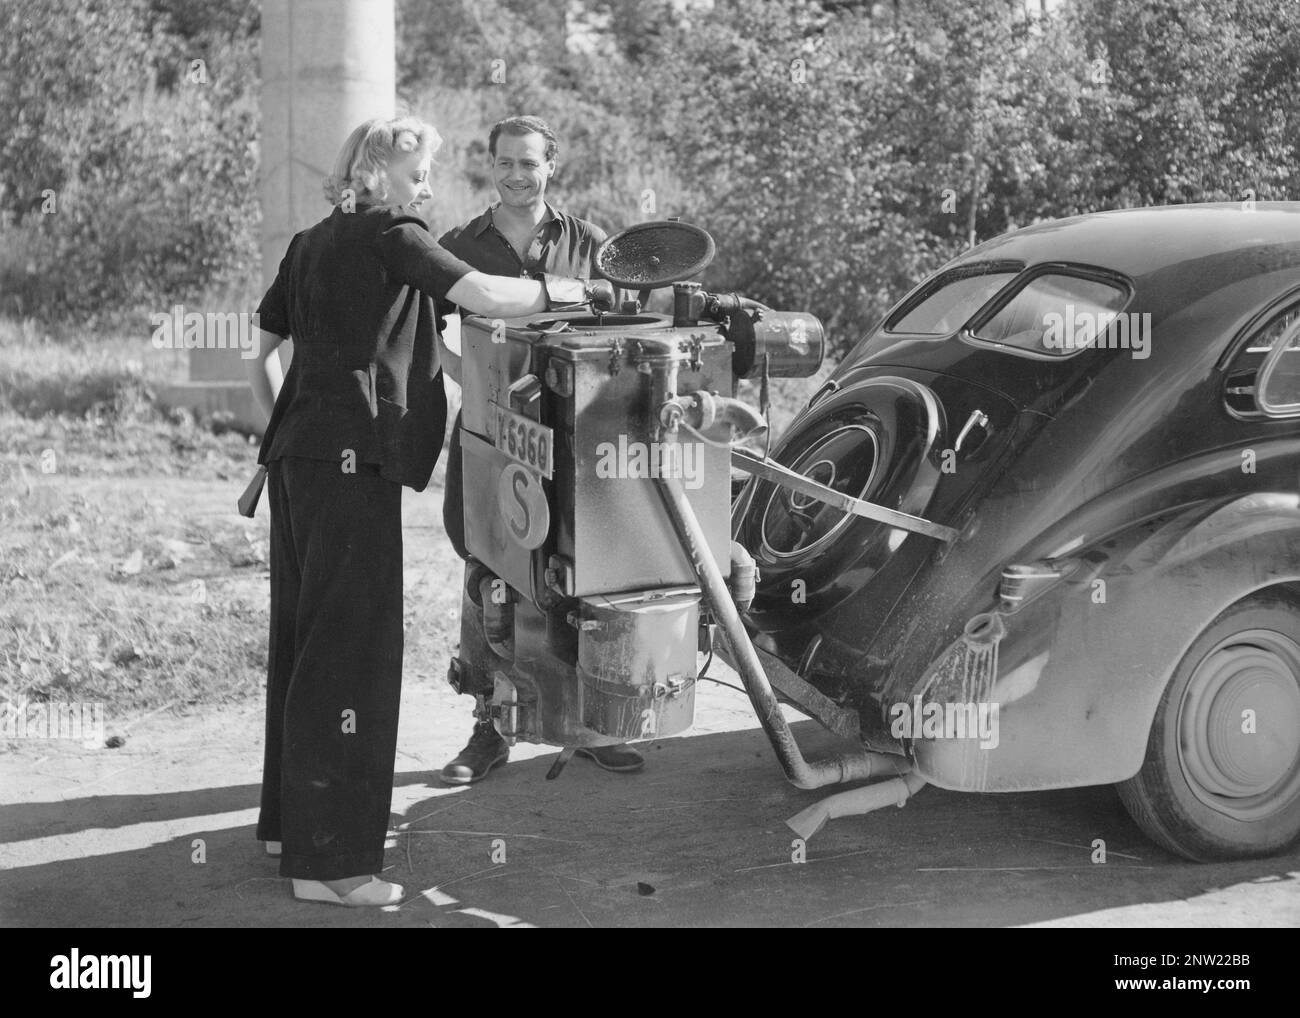 Le gaz de bois dans les années 1940 L'enregistrement du long métrage suédois Stora skrällen de 1942 où les acteurs Karin Ekelund et Allan Bohlin participent. Une caractéristique naturelle pendant ces années pendant la seconde Guerre mondiale est l'unité de gazéification du bois sur la voiture. Le gaz de bois est un gaz qui résulte de la combustion incomplète du bois ou du charbon, et qui a été utilisé pour alimenter les véhicules. Le conducteur devait remplir lui-même le charbon et s'assurer que la combustion fonctionnait comme il se devait. En raison d'un manque de carburant pendant la seconde Guerre mondiale, le gaz de bois a joué un rôle majeur dans le maintien des transports. Banque D'Images